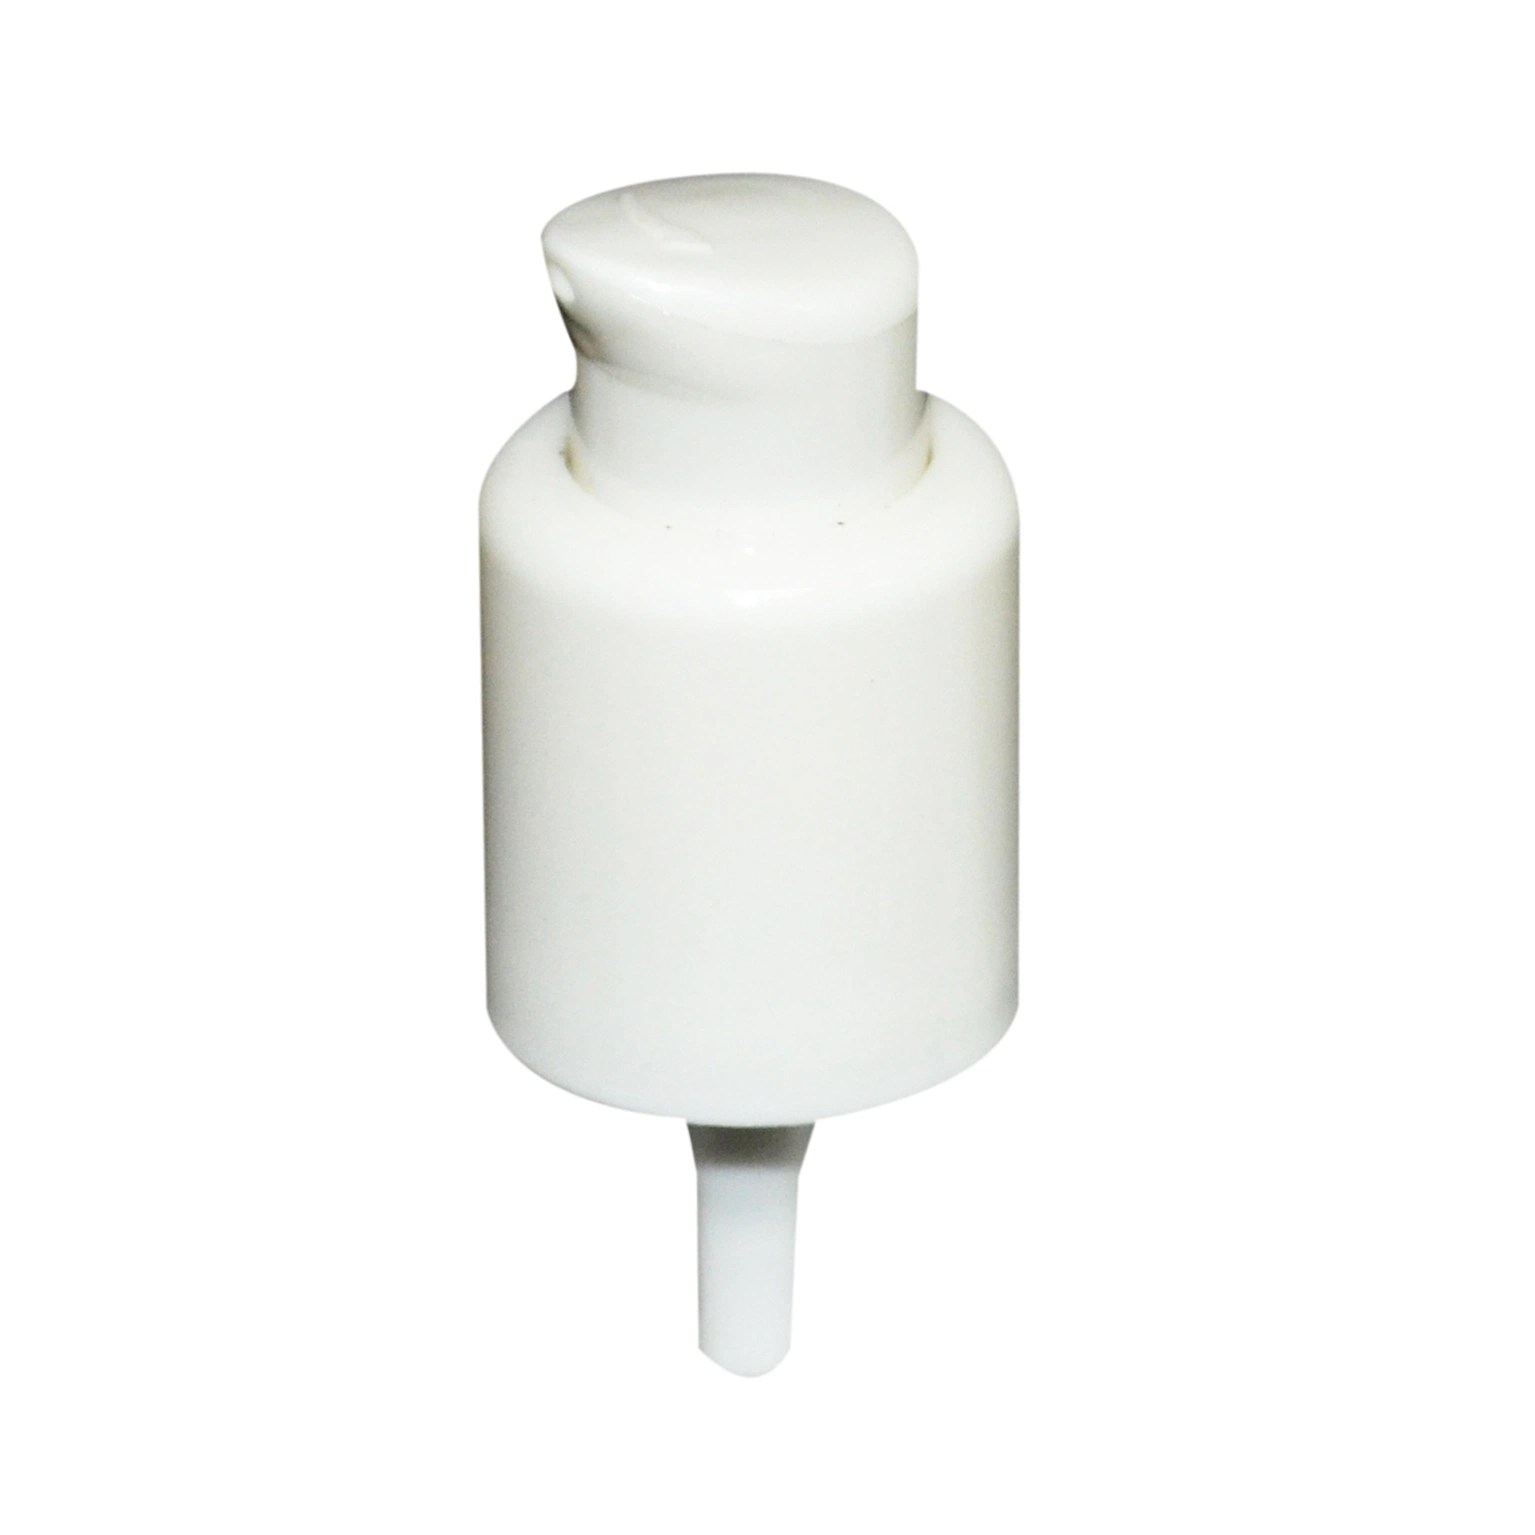 La bomba de loción de dispensación de plástico, color blanco, el uso de champú, acondicionador, loción, etc